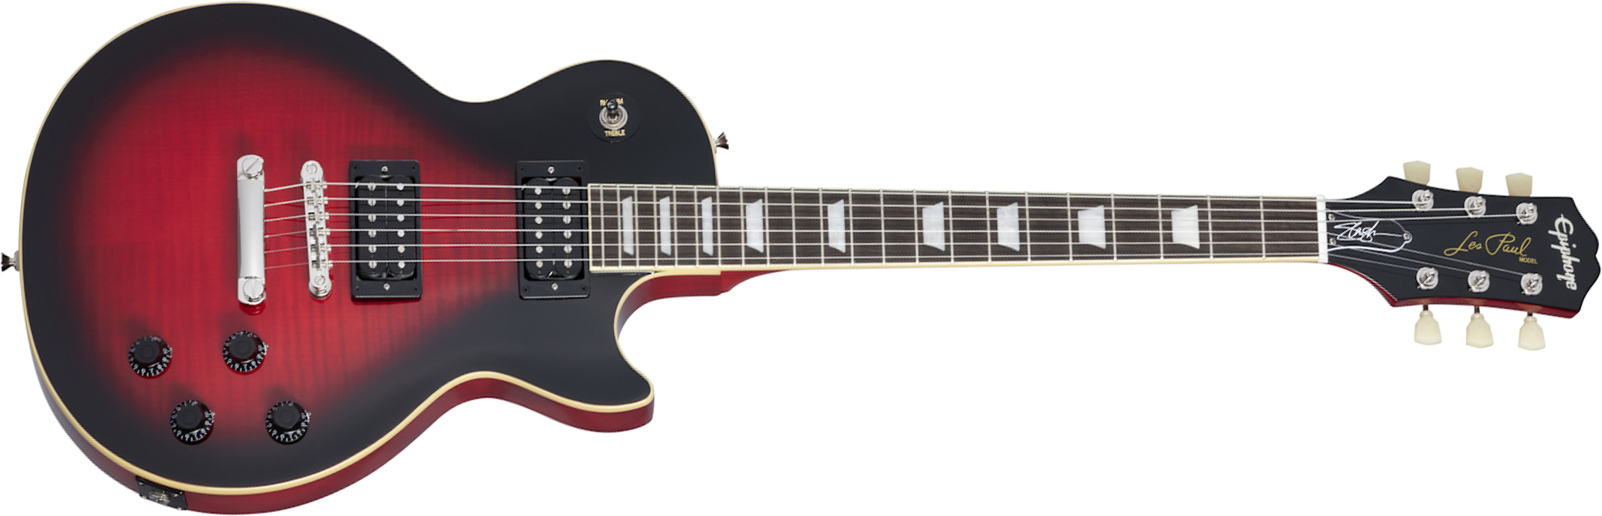 Epiphone Slash Les Paul Standard Signature 2h Ht Lau +etui - Vermillion Burst - Single cut electric guitar - Main picture